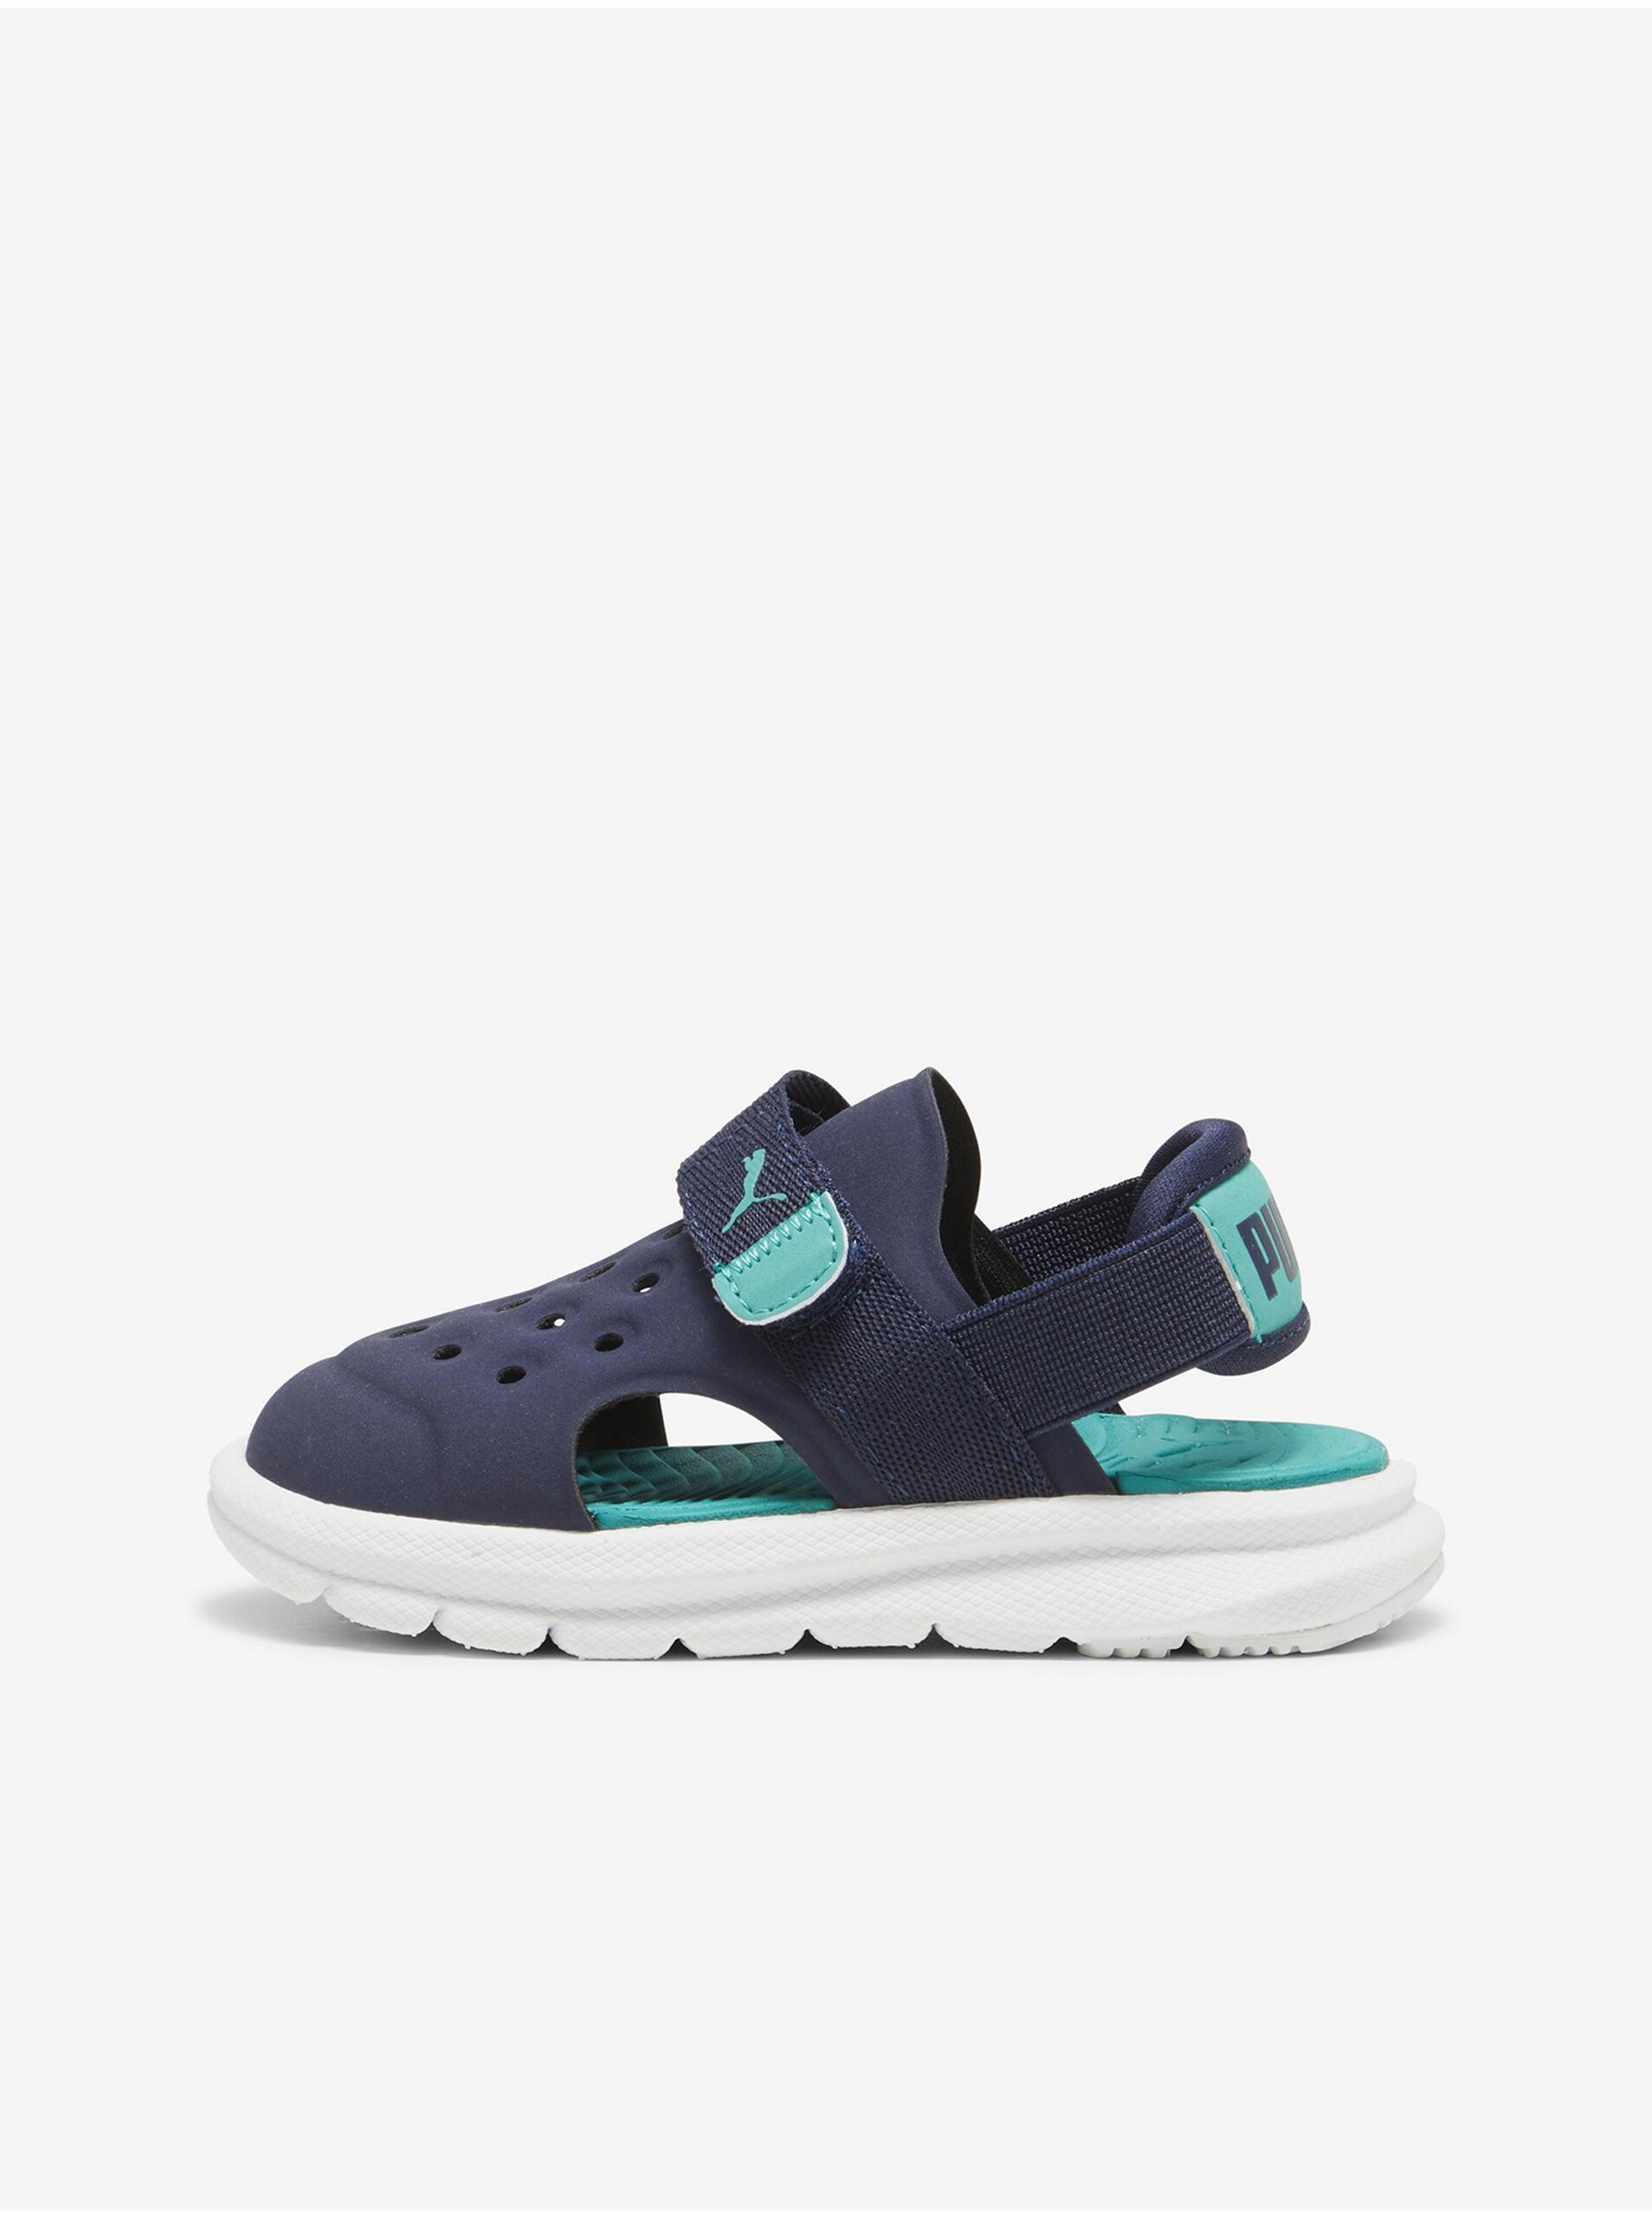 E-shop Tmavě modré klučičí sandály Puma Evolve Sandal AC Inf